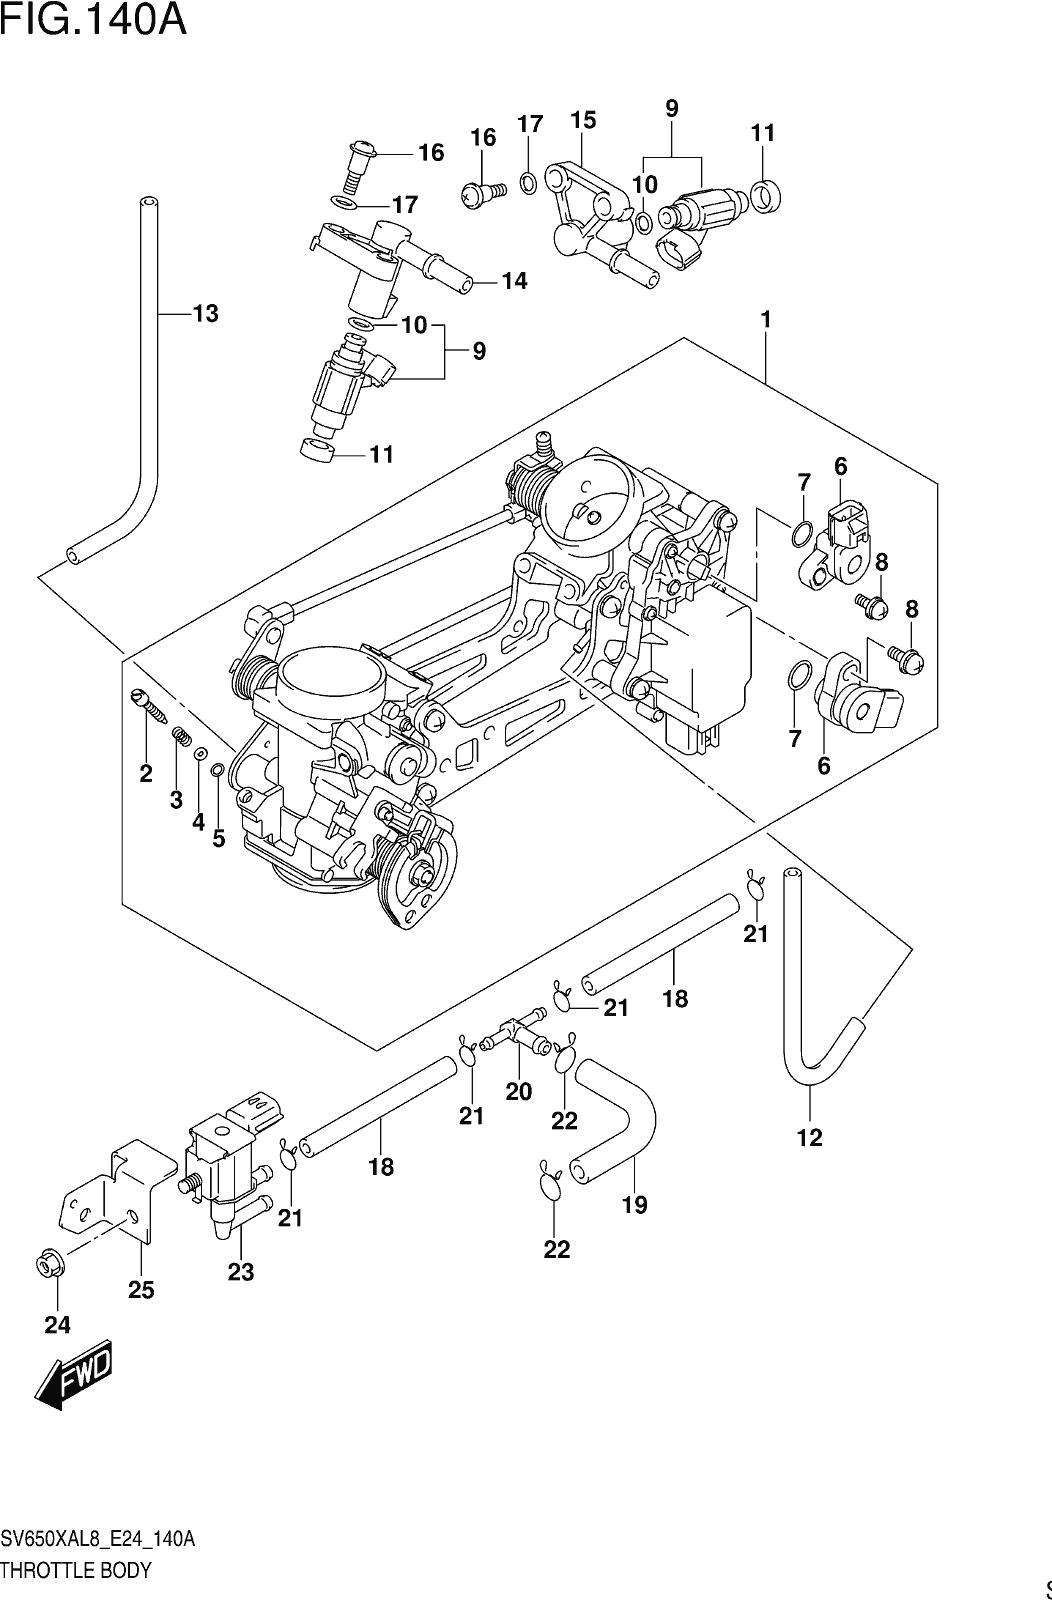 Fig.140a Throttle Body